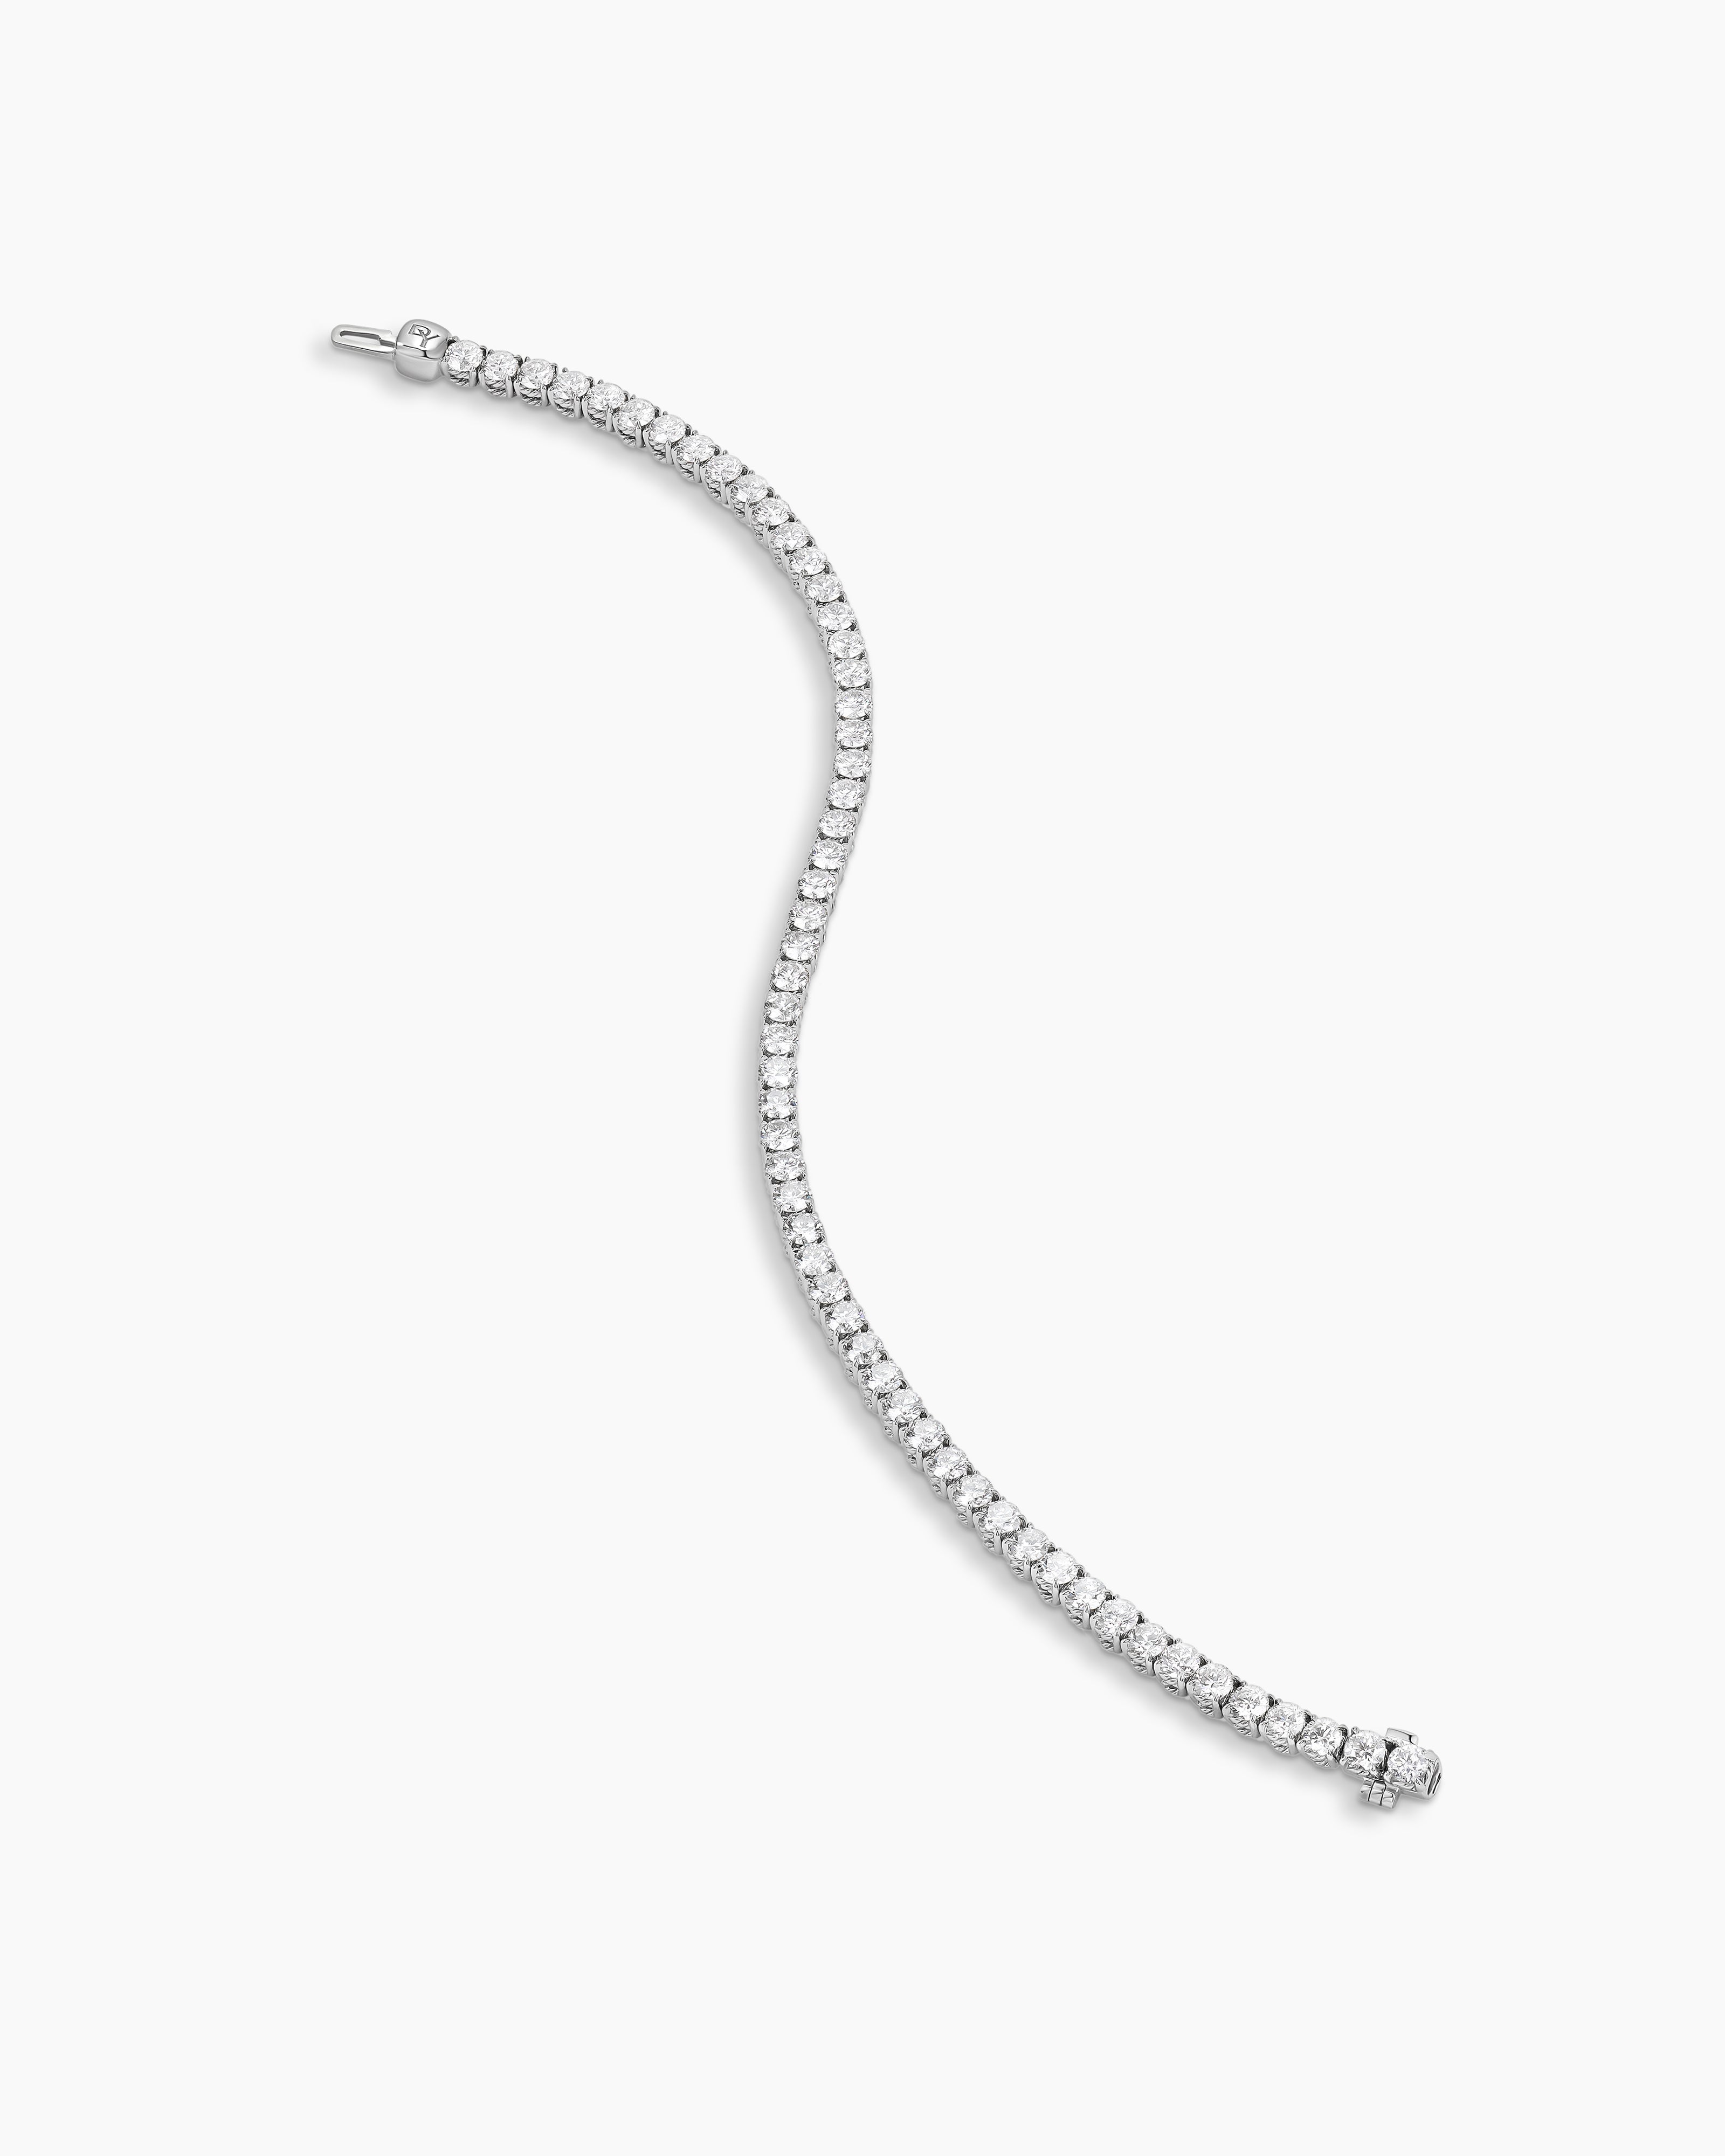 The 0.50 Carat Diamond Half Tennis Bracelet – Noémie